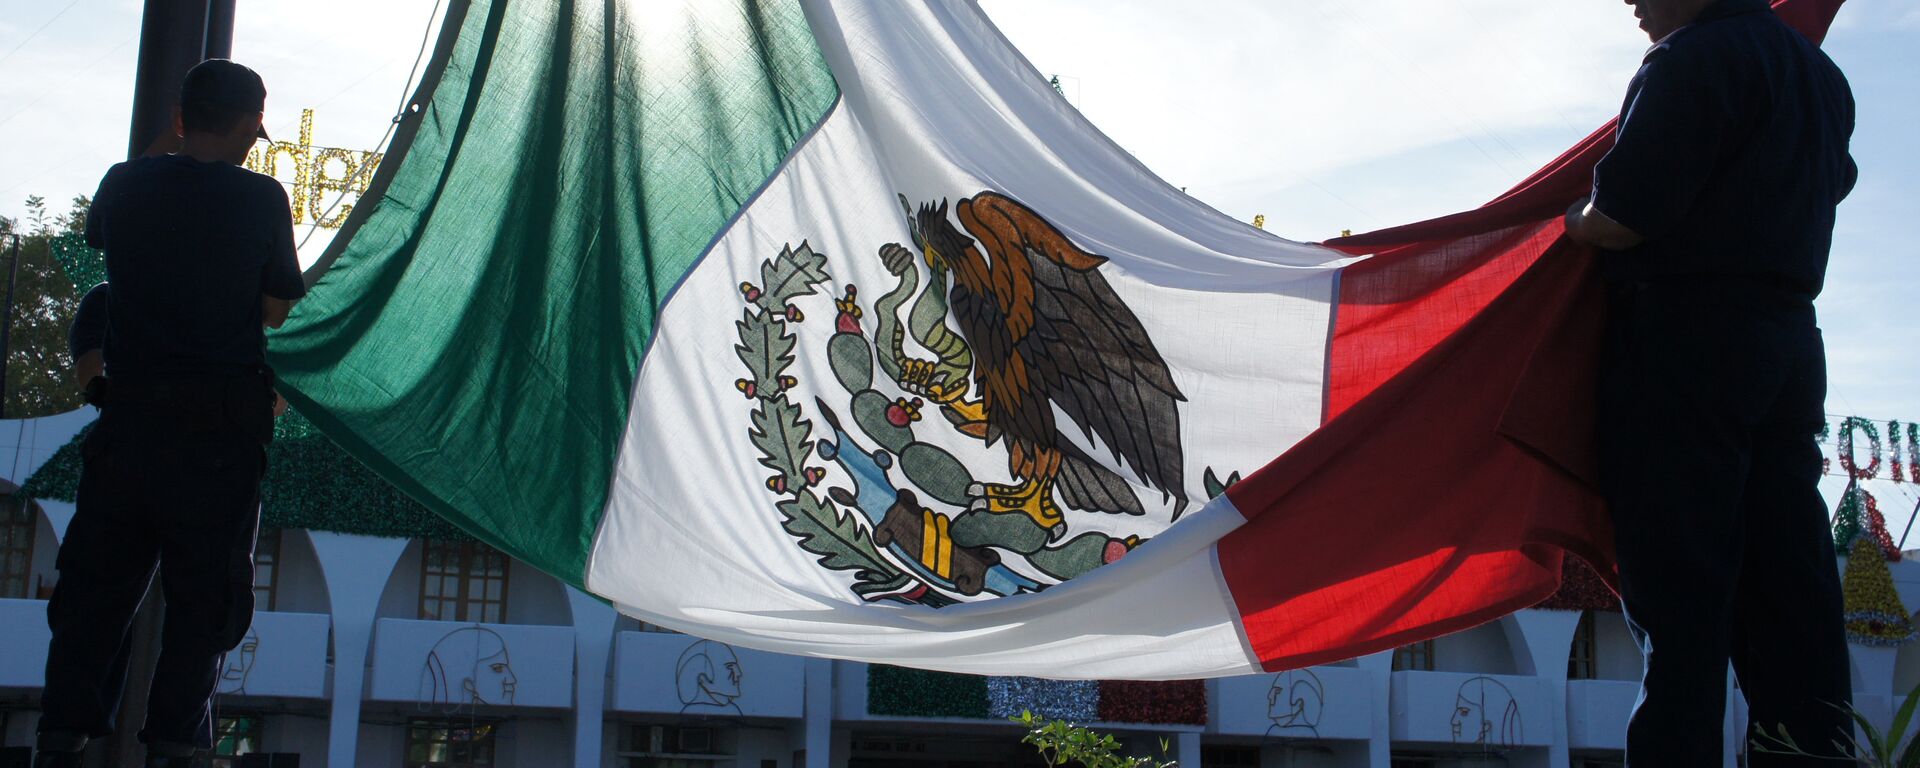 La bandera de México - Sputnik Mundo, 1920, 29.05.2021